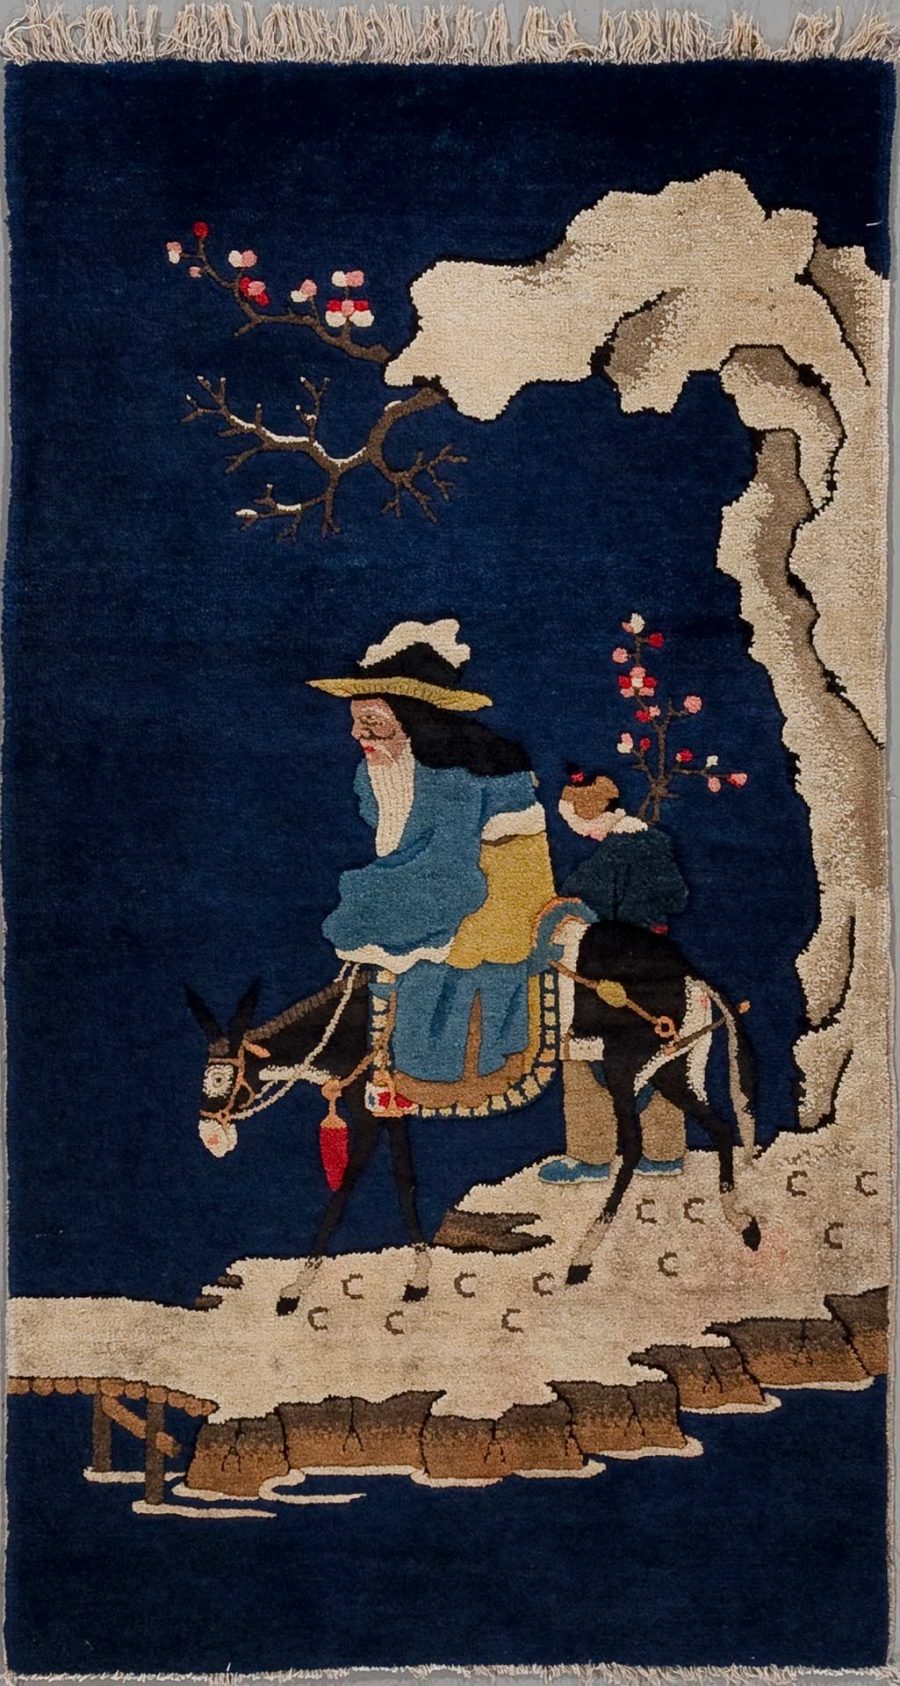 Handgewebter Teppich mit darstellender Szene: Ein älterer Reisender in traditioneller Kleidung sitzt auf einem Esel, der von einem jungen Begleiter geführt wird. Sie überqueren eine Brücke in einer nächtlichen Landschaft unter blühenden Bäumen und neben einem großen, knorrigen Baum, deren Konturen sich vom dunkelblauen Hintergrund abheben.